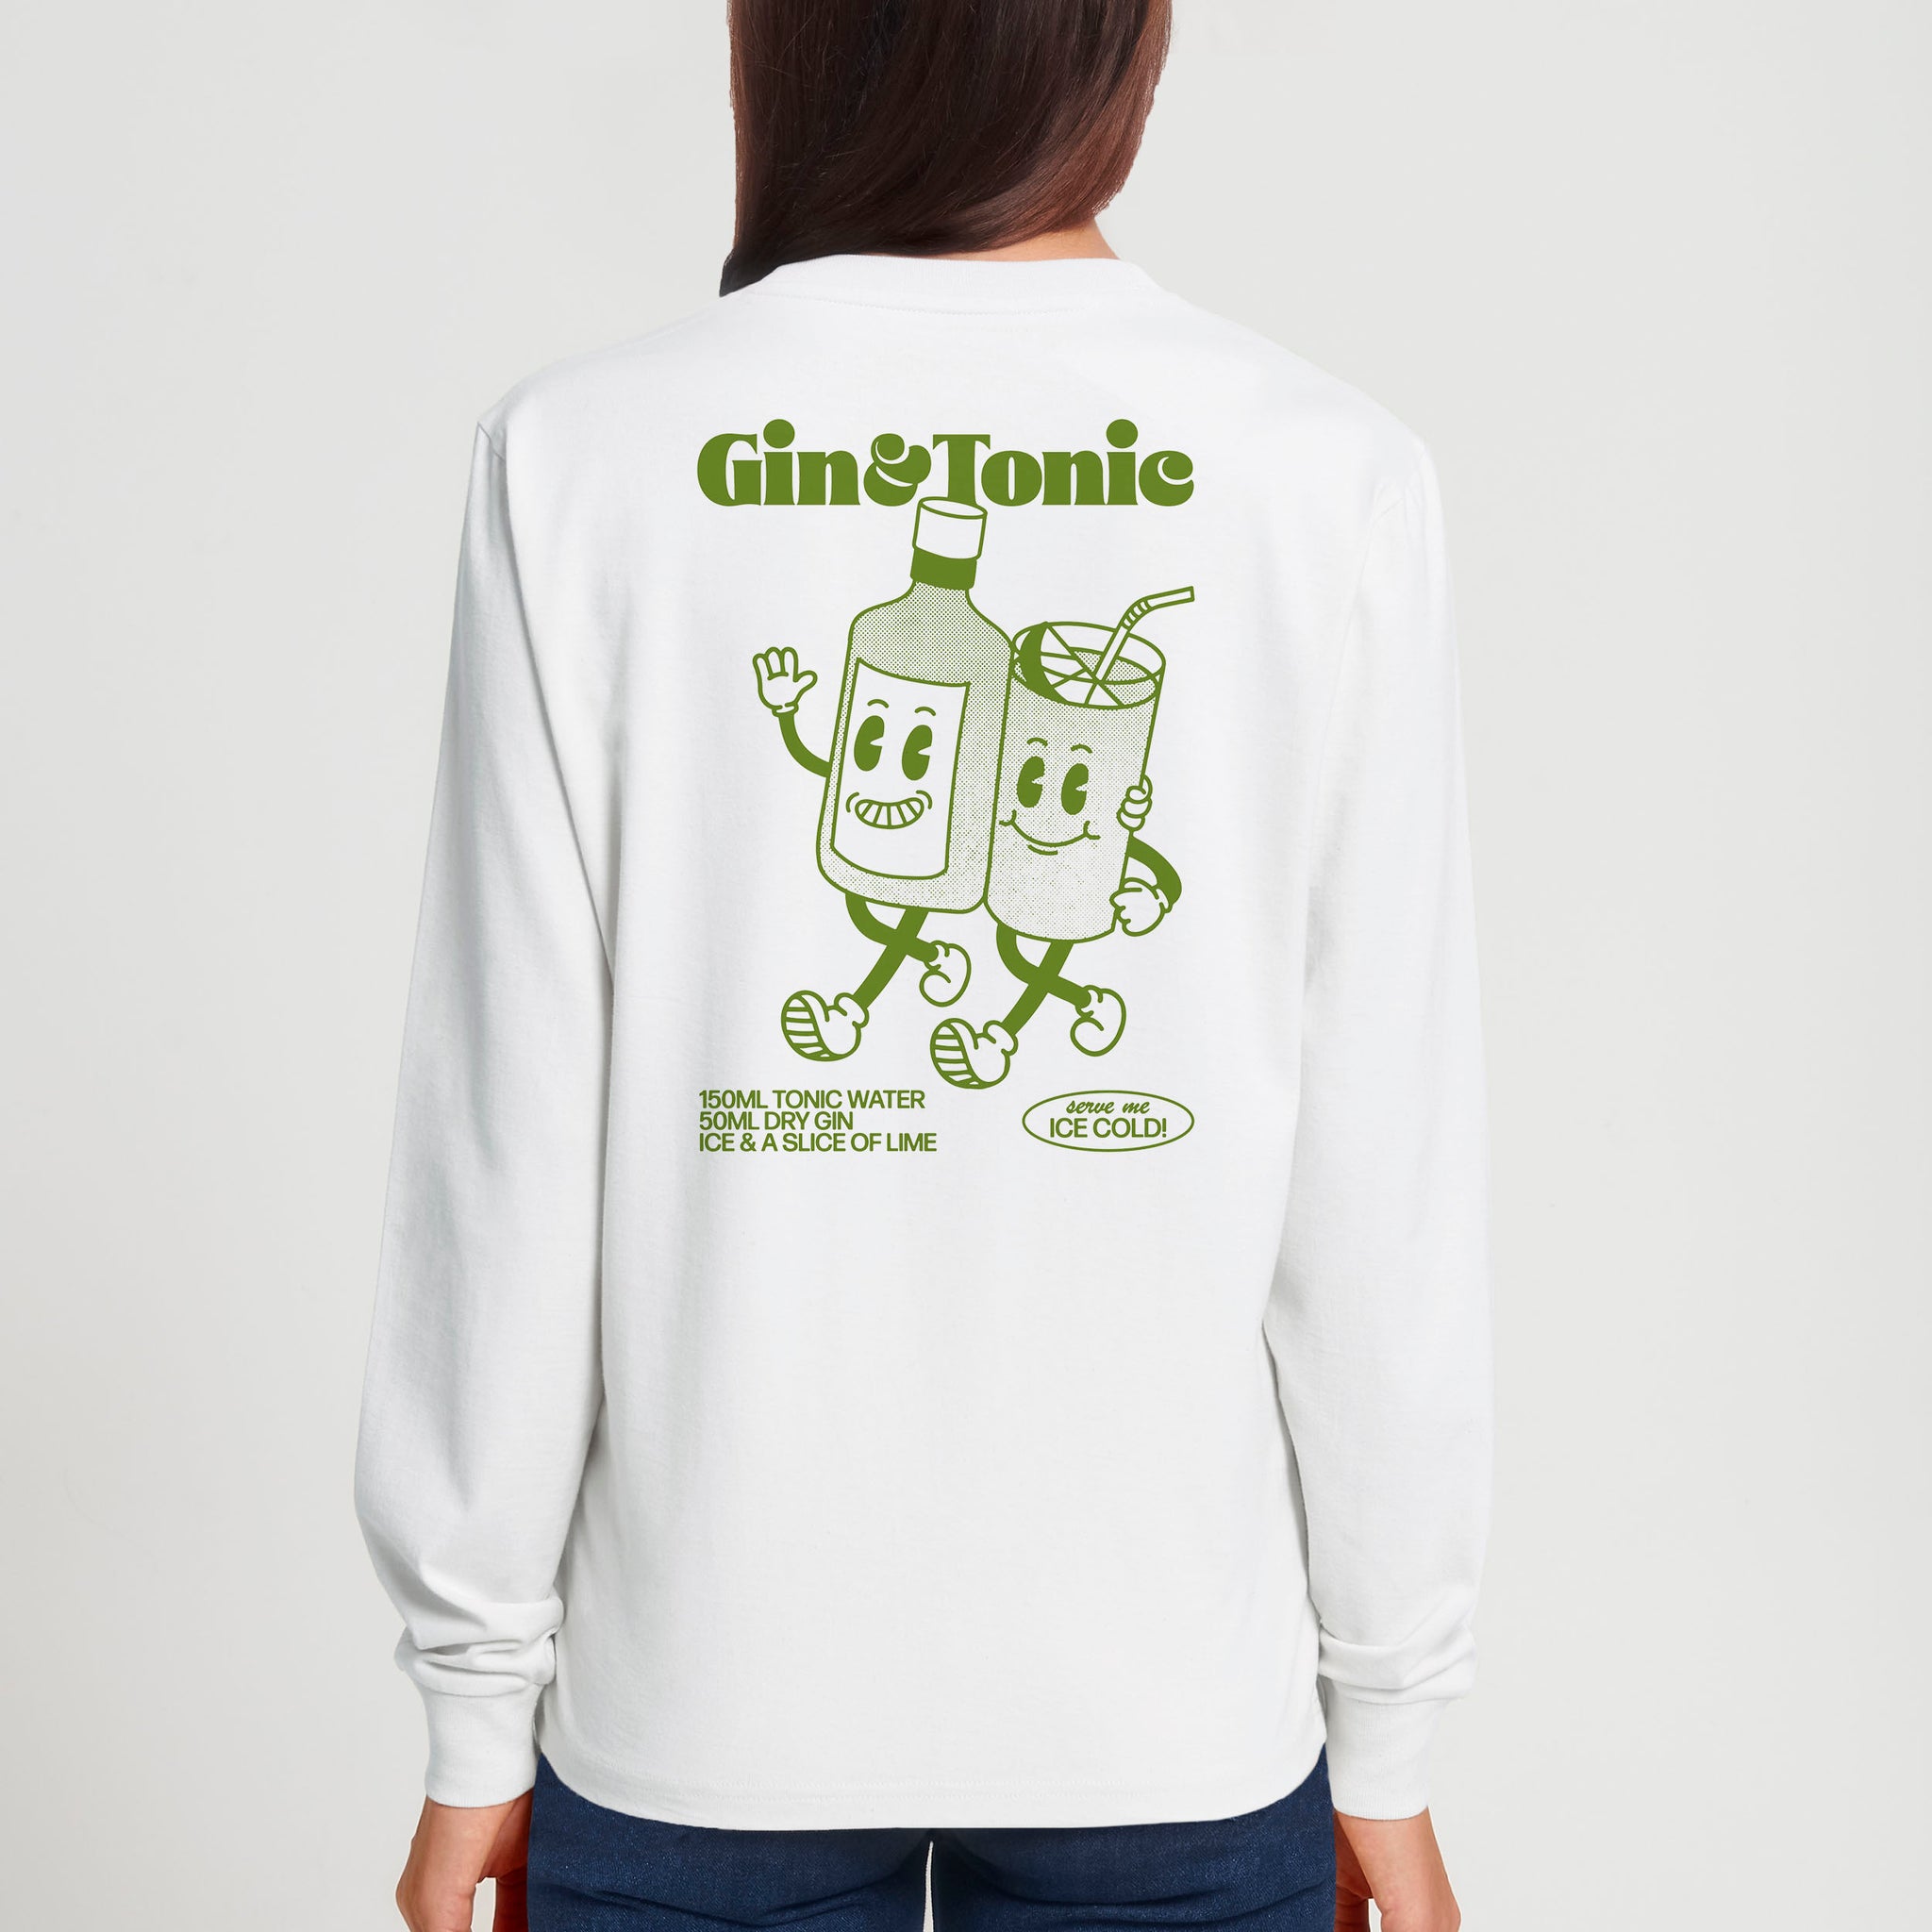 'Gin & Tonic' long sleeve T-shirt